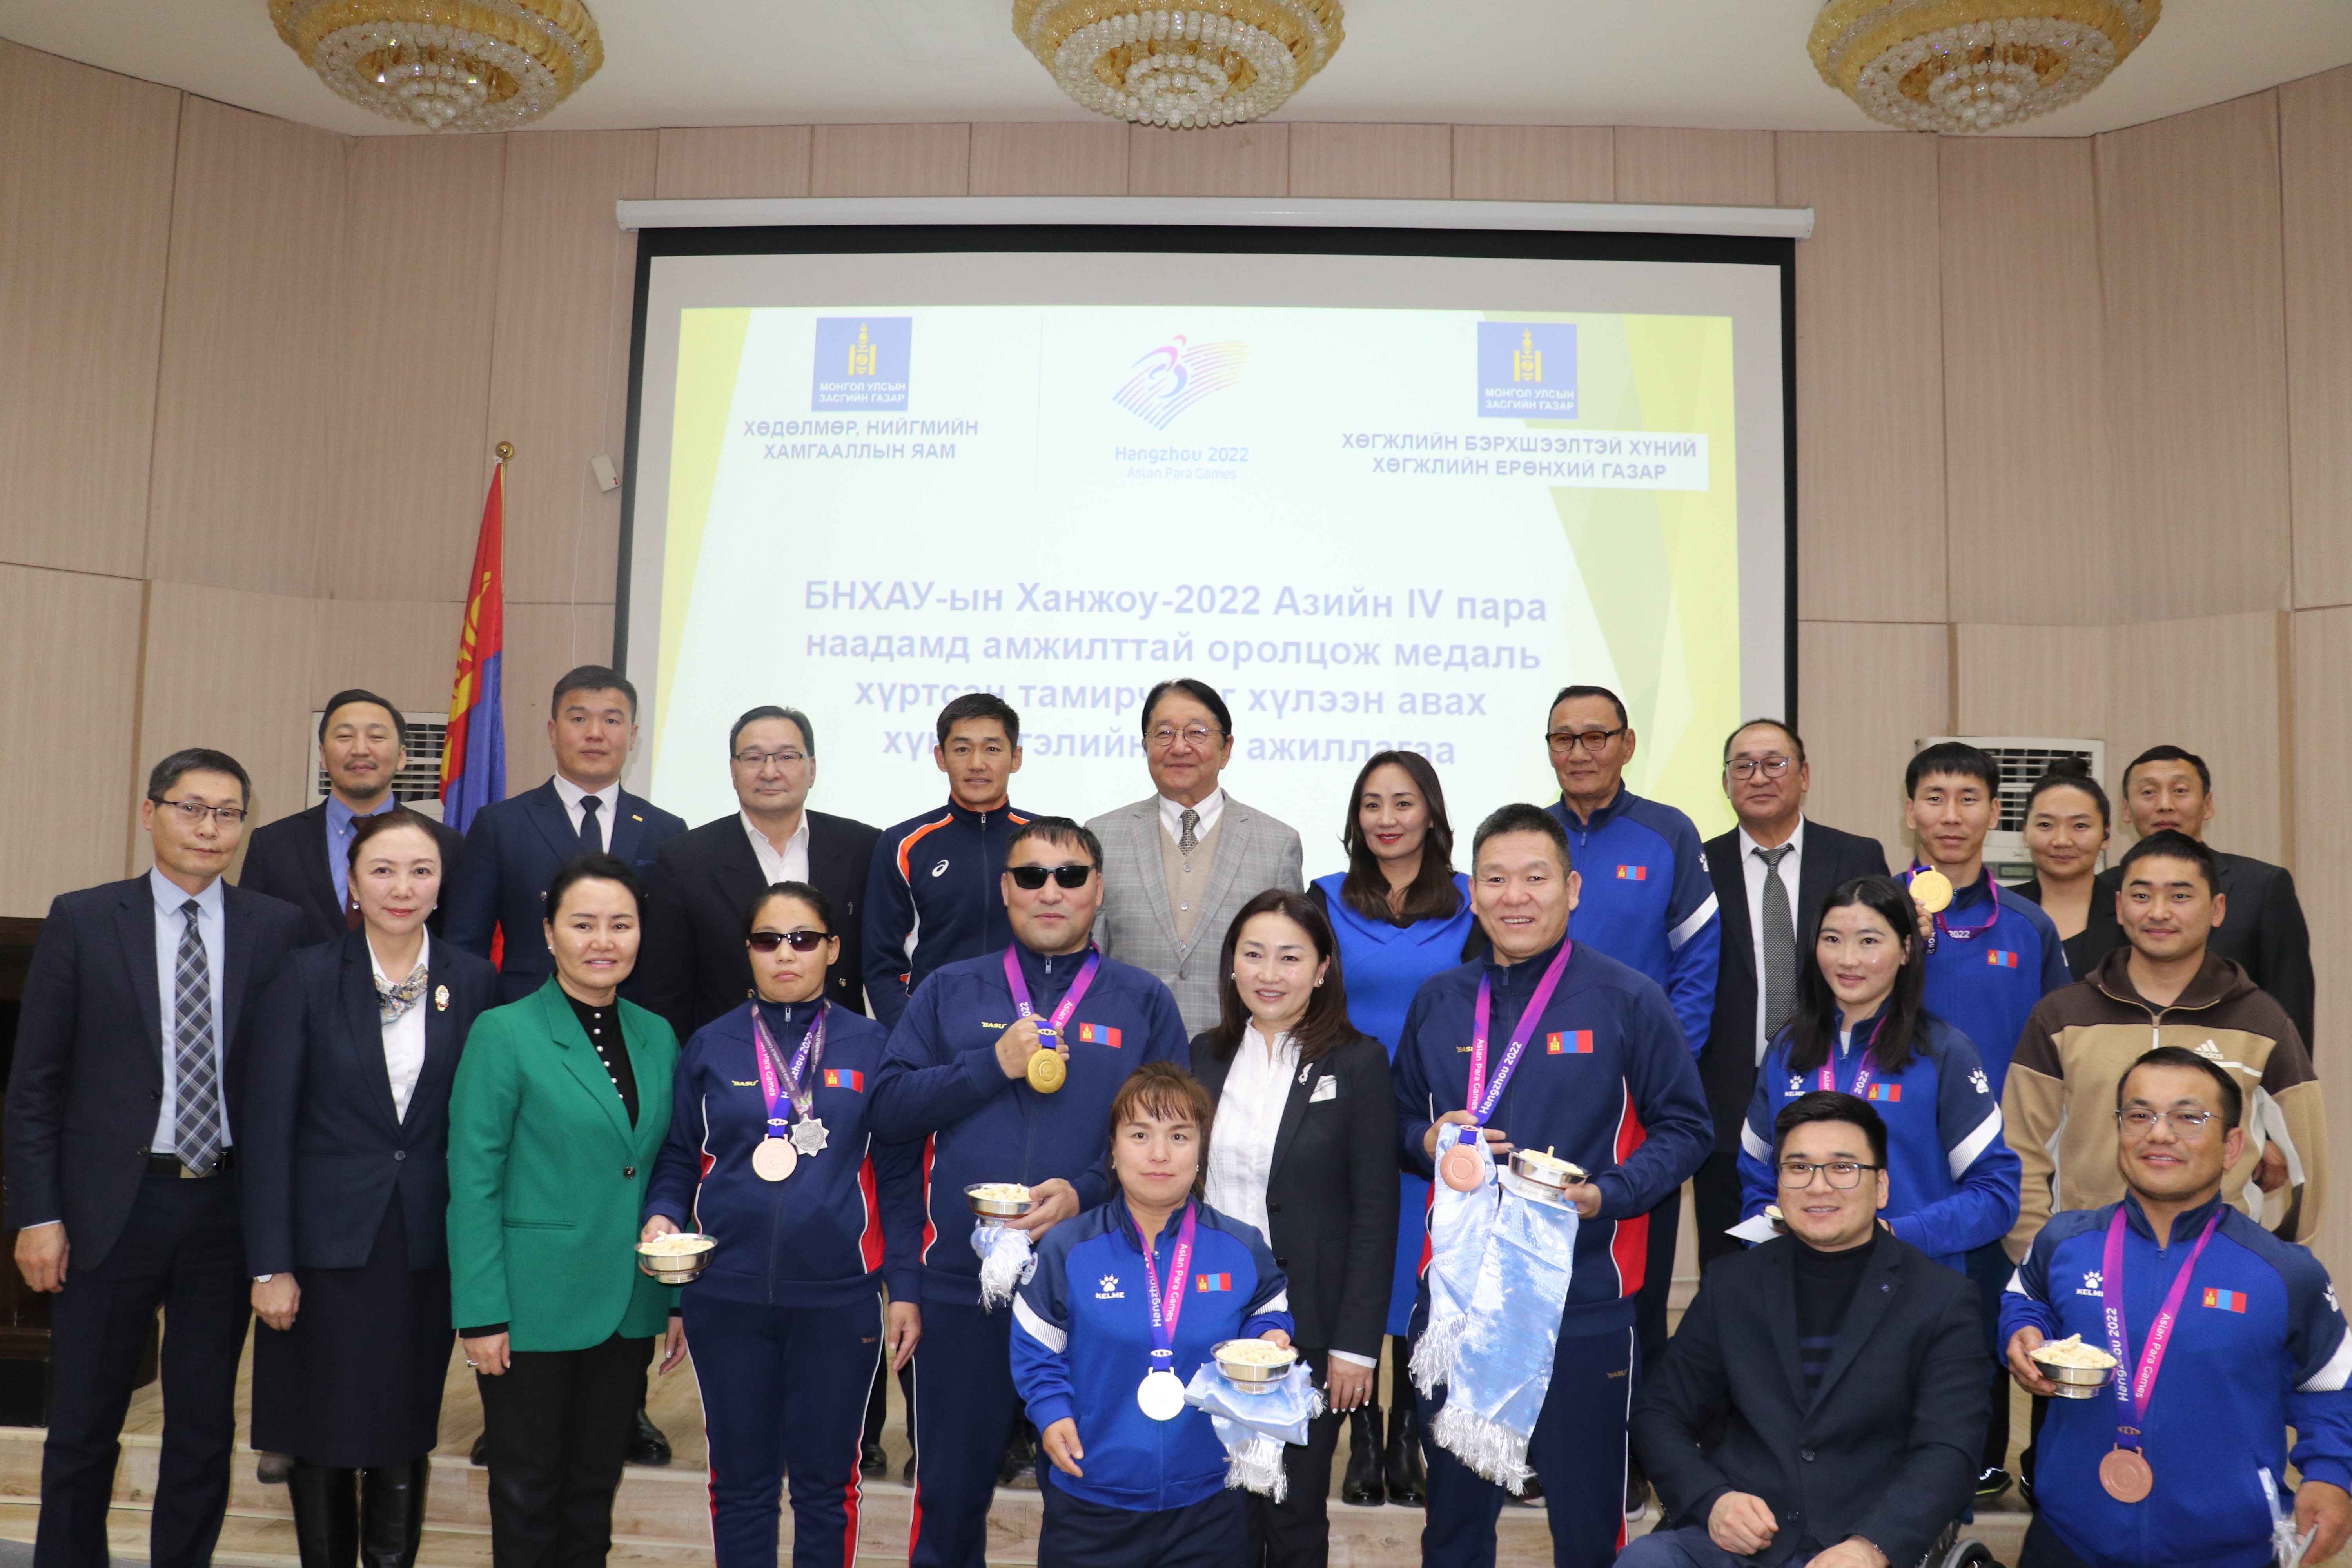 БНХАУ-ын “Ханжоу-2022” Азийн IV пара наадамд амжилттай оролцсон баг, тамирчдыг хүлээн авч, хүндэтгэл үзүүллээ 